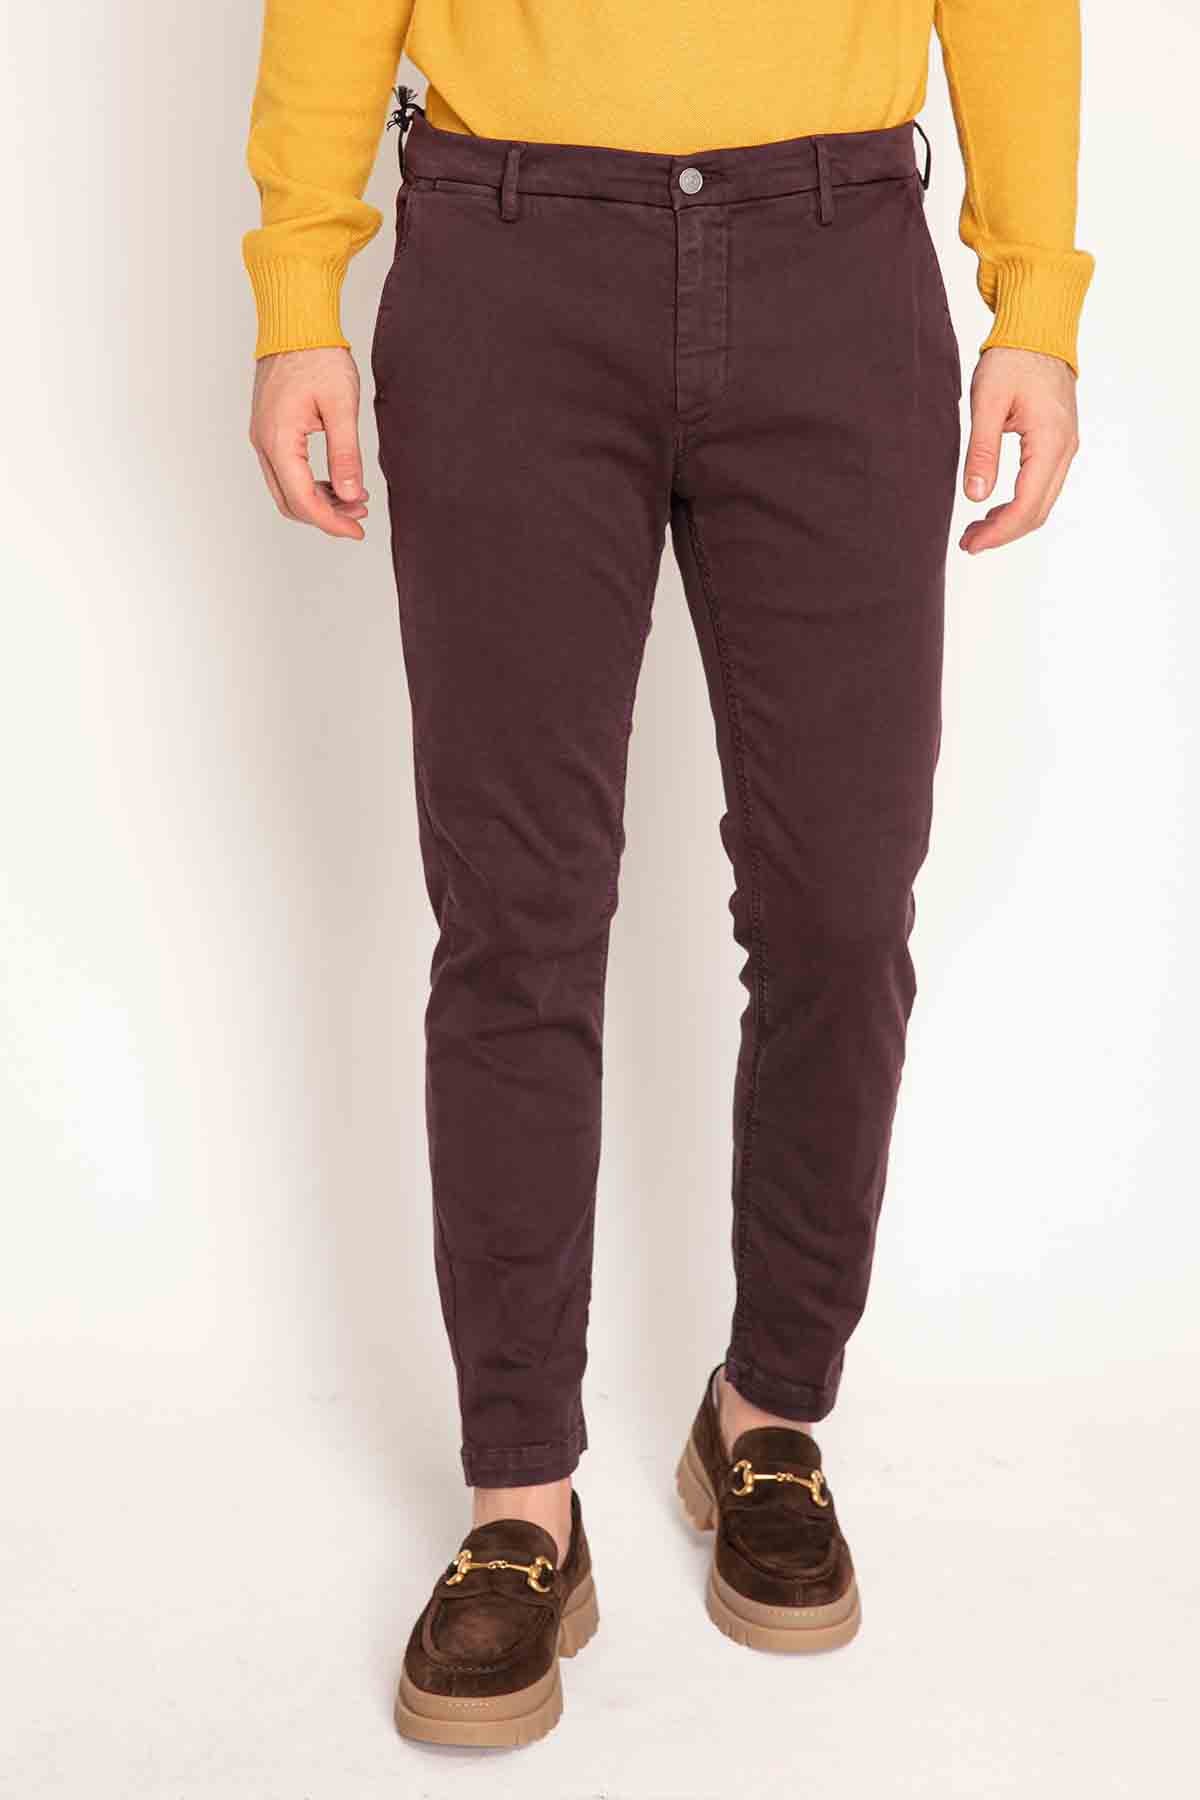 Replay Zeumar Yandan Cepli Slim Fit Pantolon-Libas Trendy Fashion Store